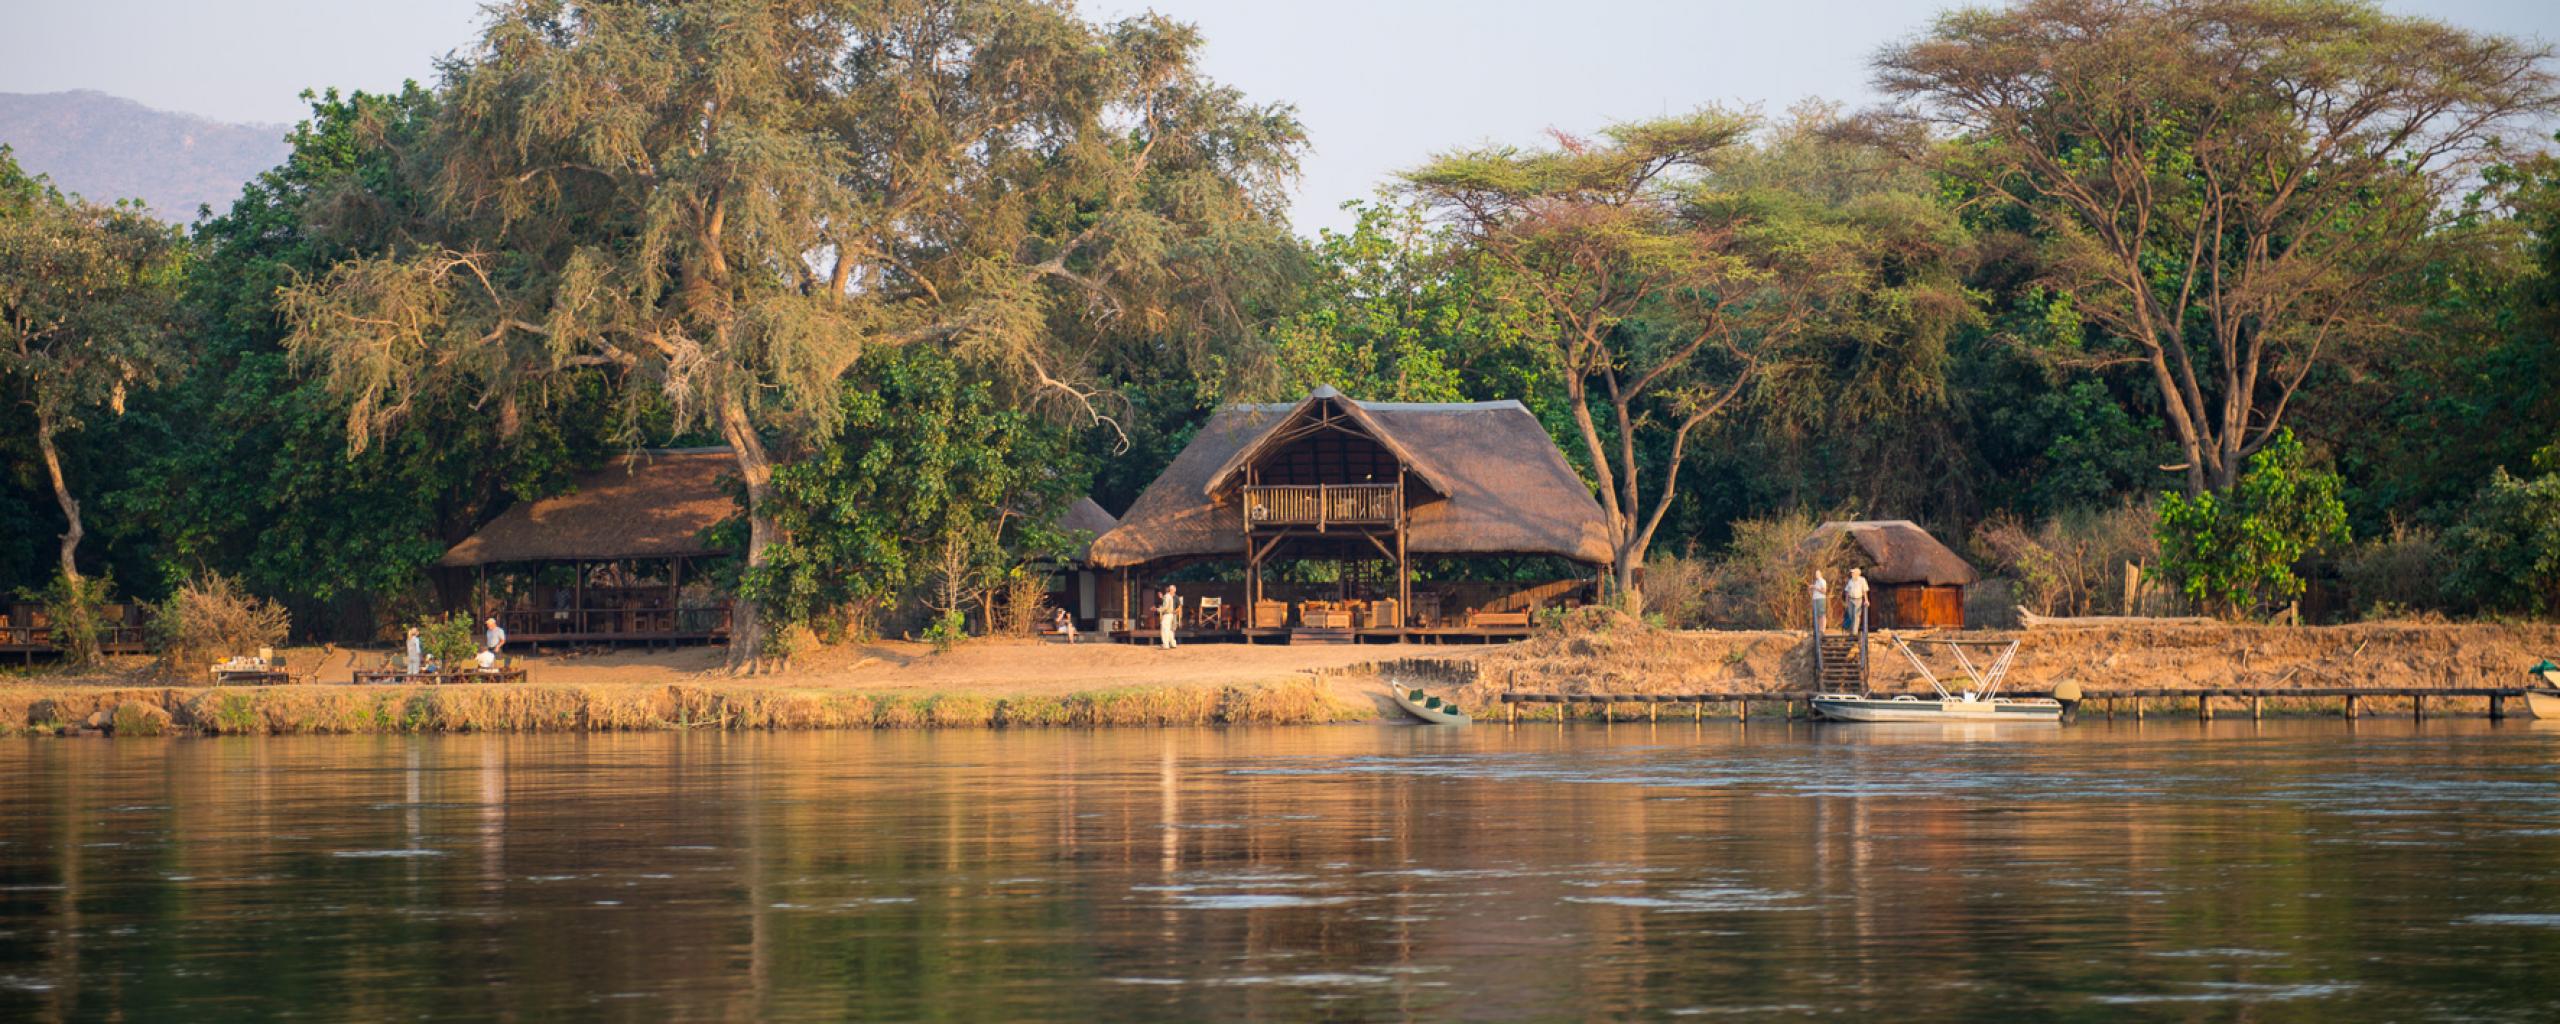 Chiawa Camp - Lower Zambezi